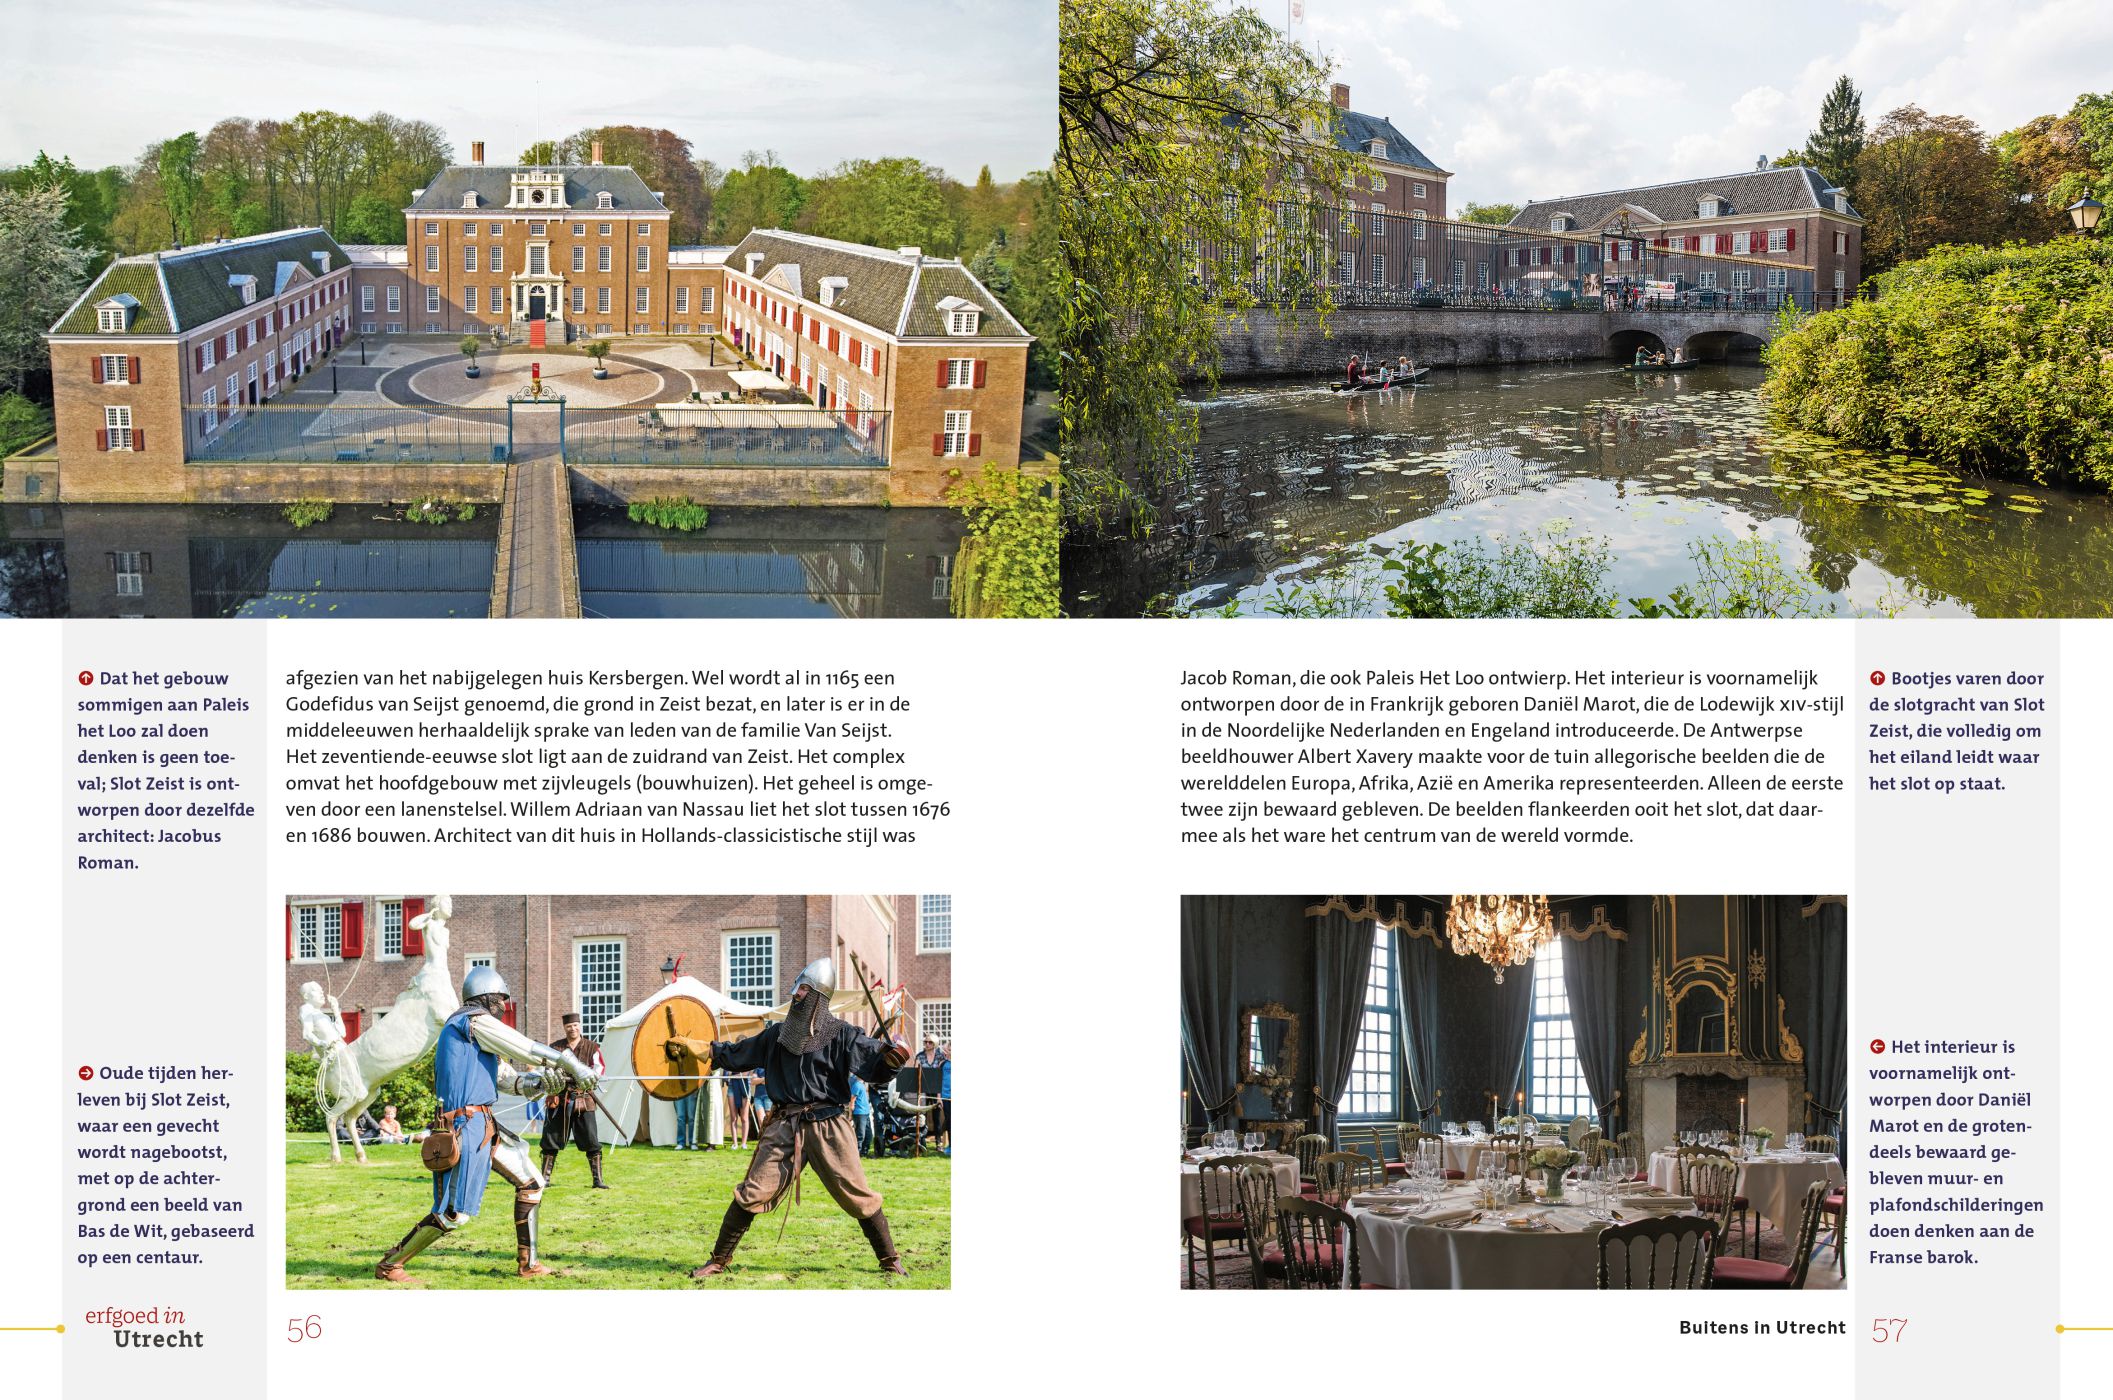 Inkijkexemplaar van het boek: <em>Erfgoed in Utrecht. Historische buitenplaatsen</em> - © Uitgeverij Matrijs